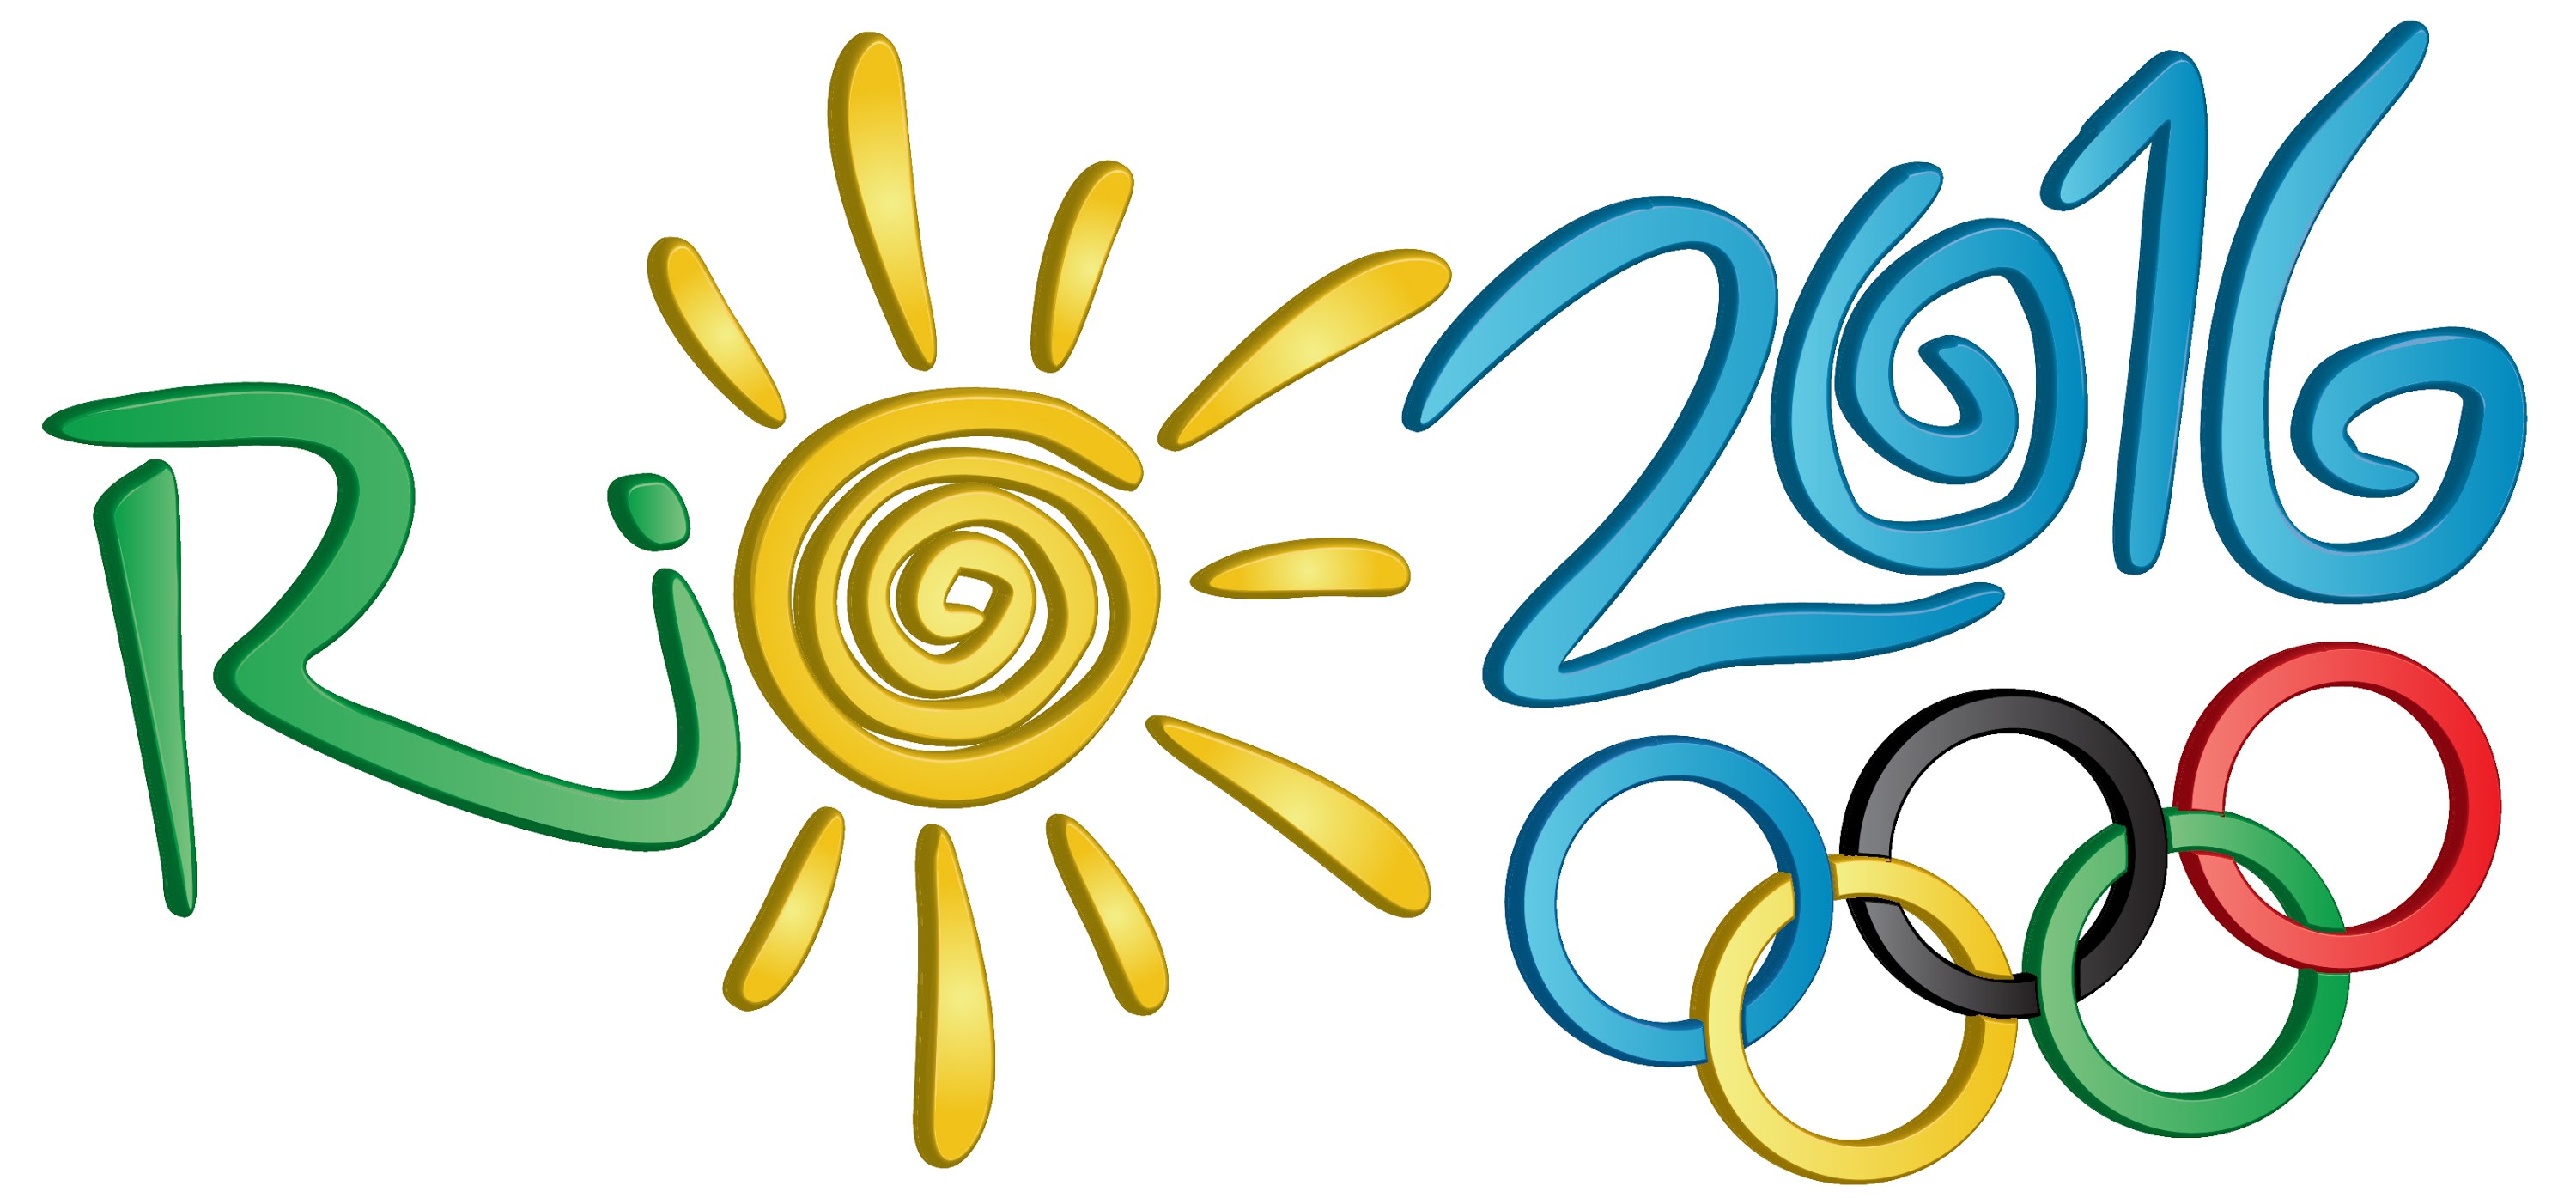 Логотип Олимпийских игр 2016